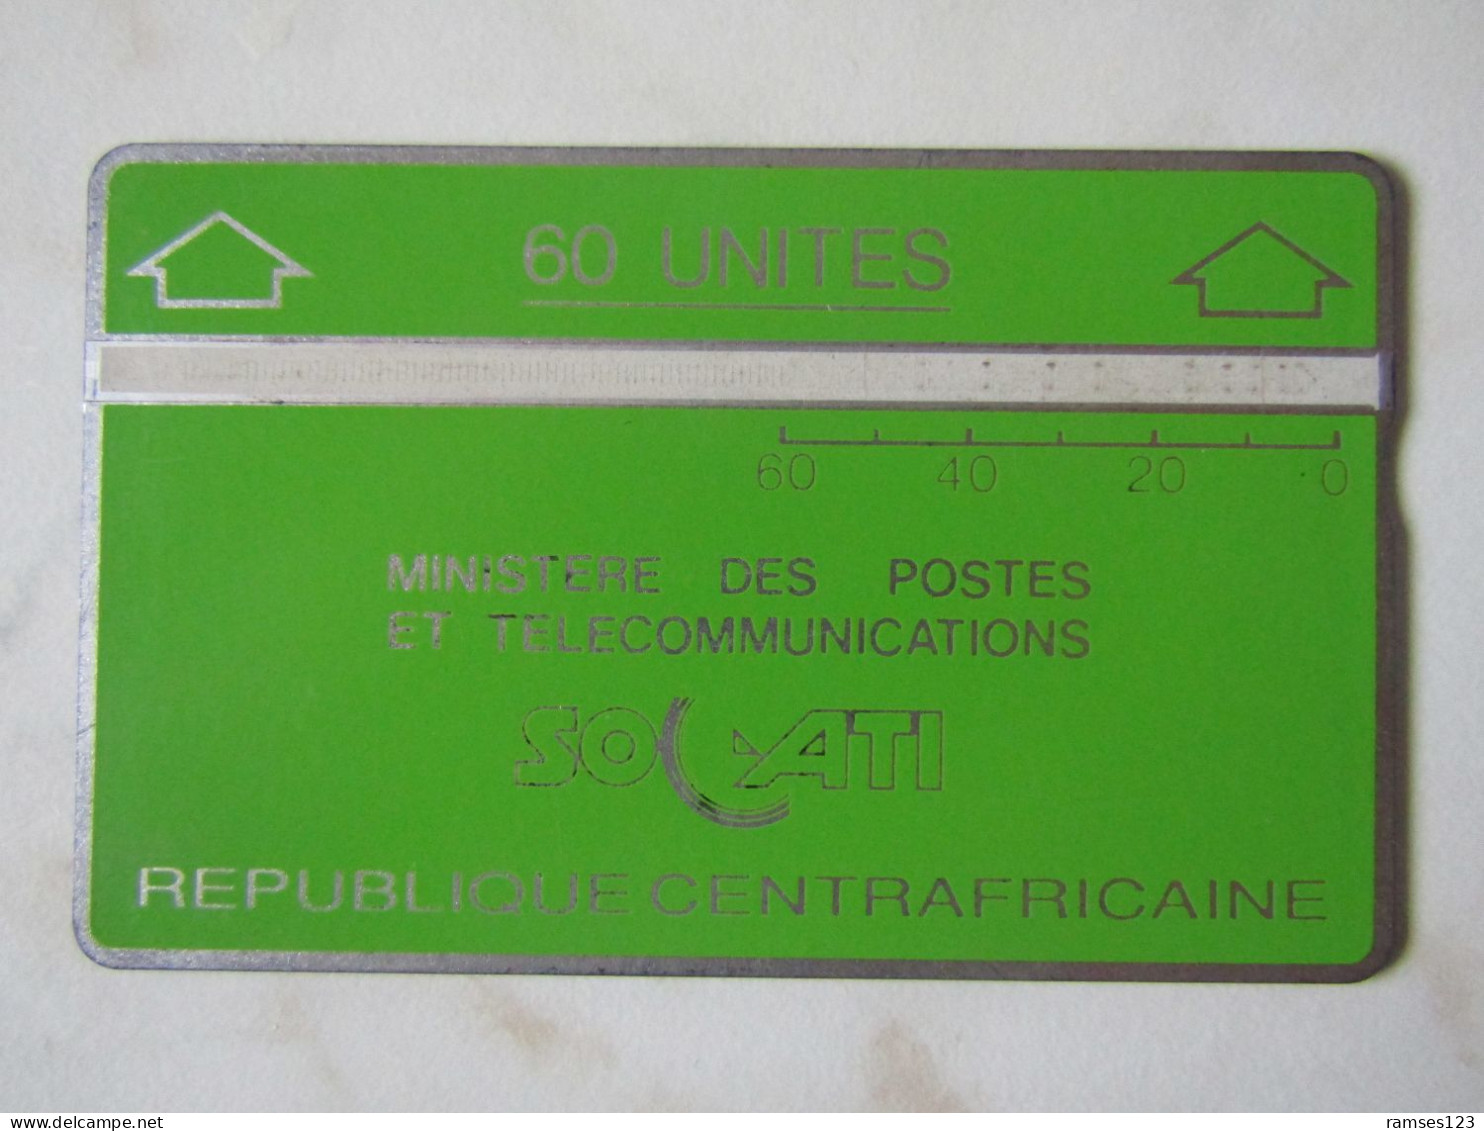 LANDIS GYR   60 UNITS CENTRAL  AFRIQUE  SOCATI  901C - Zentralafrik. Rep.